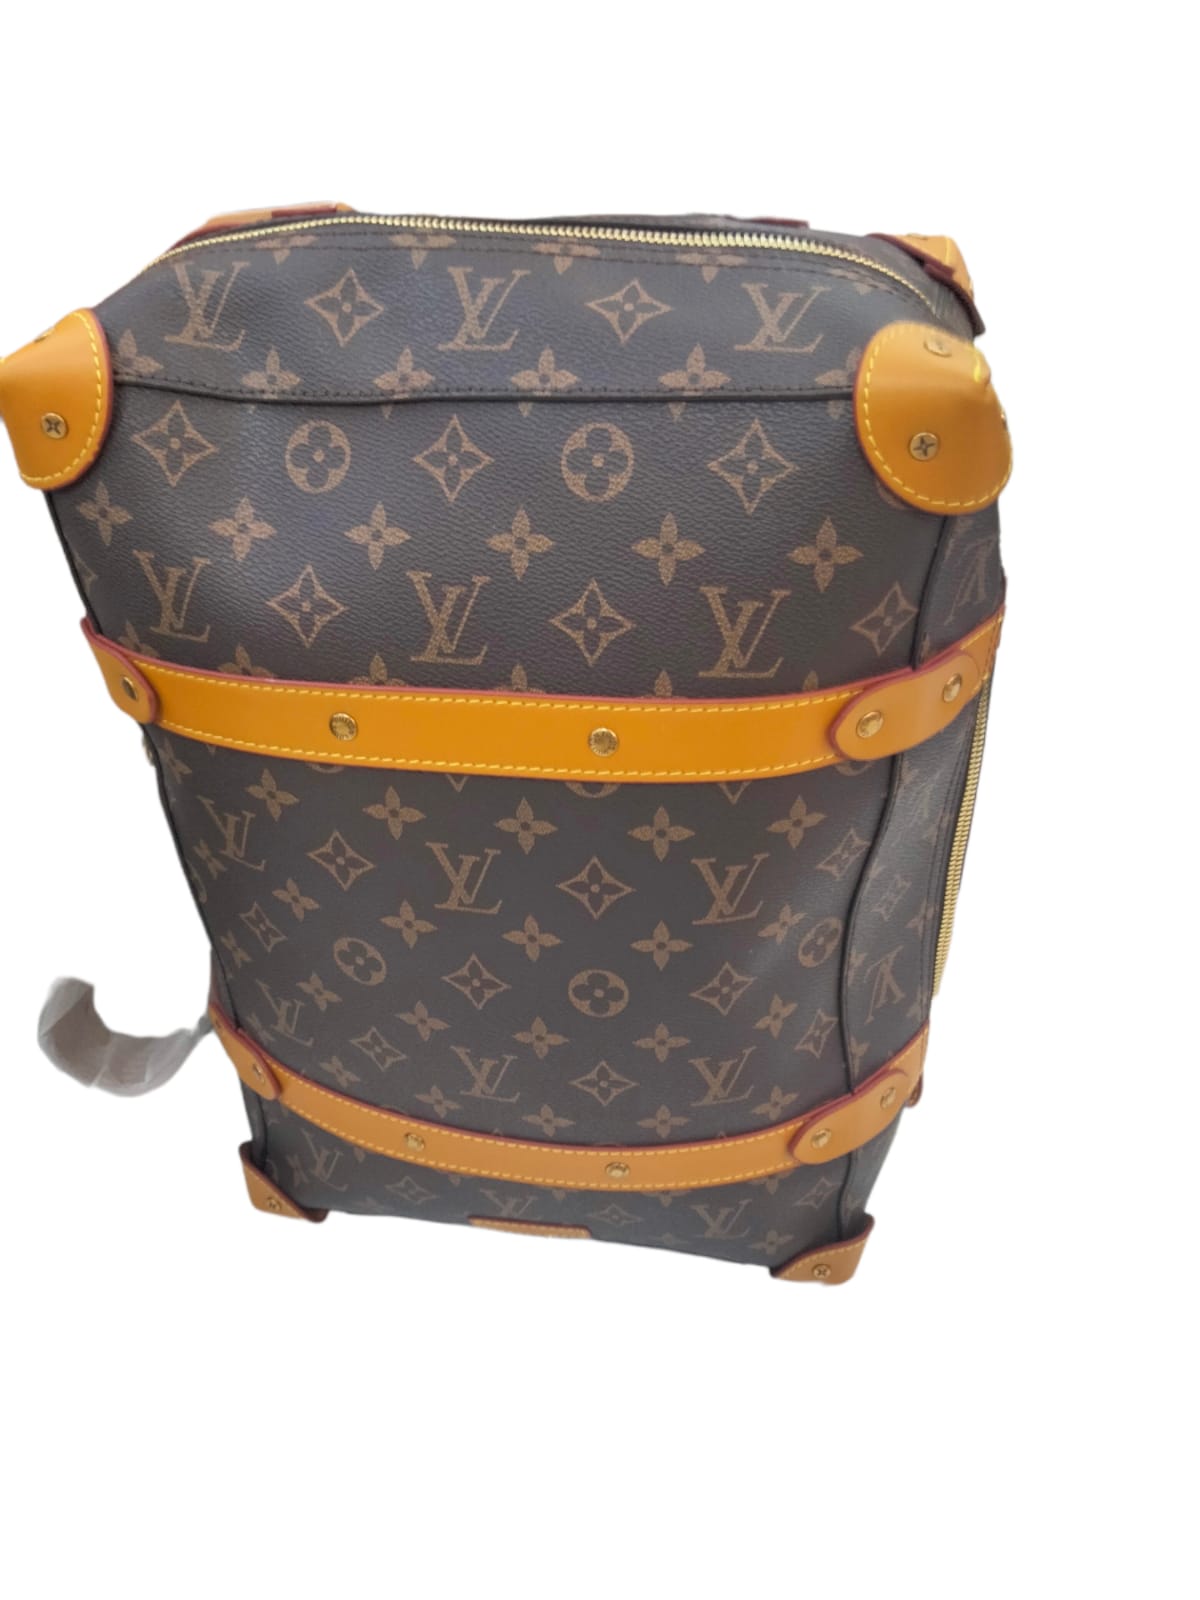 LV Bag - Backpacks - Fragrance Deliver SA